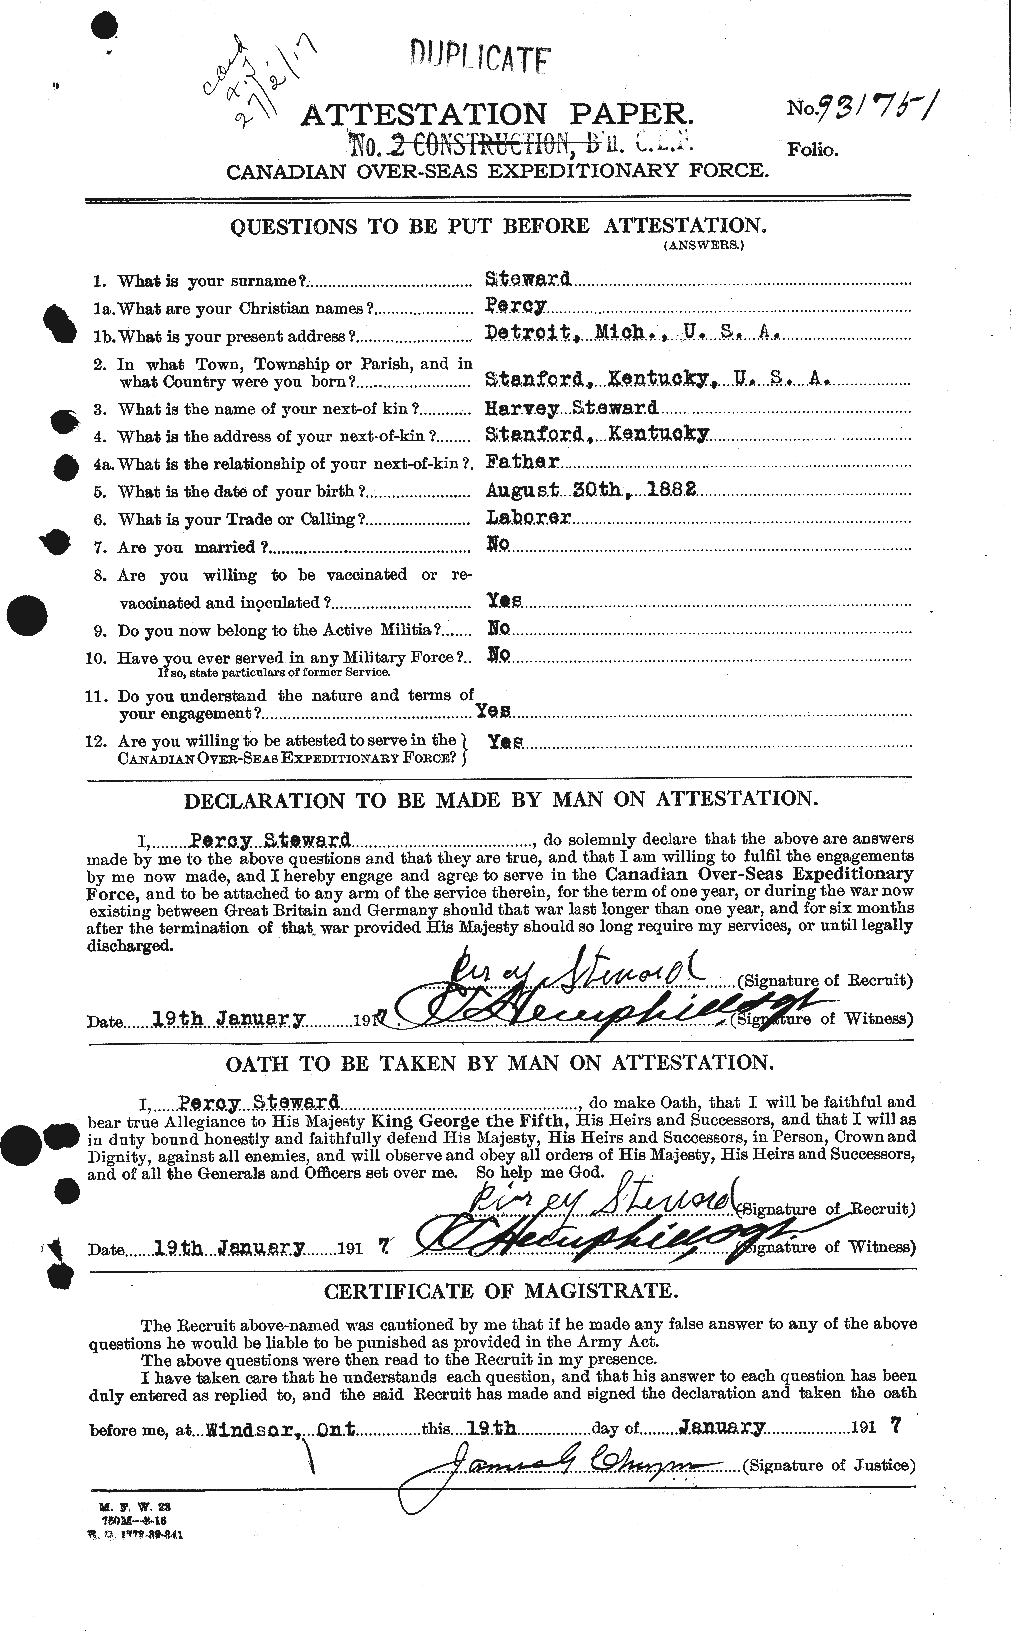 Dossiers du Personnel de la Première Guerre mondiale - CEC 118724a